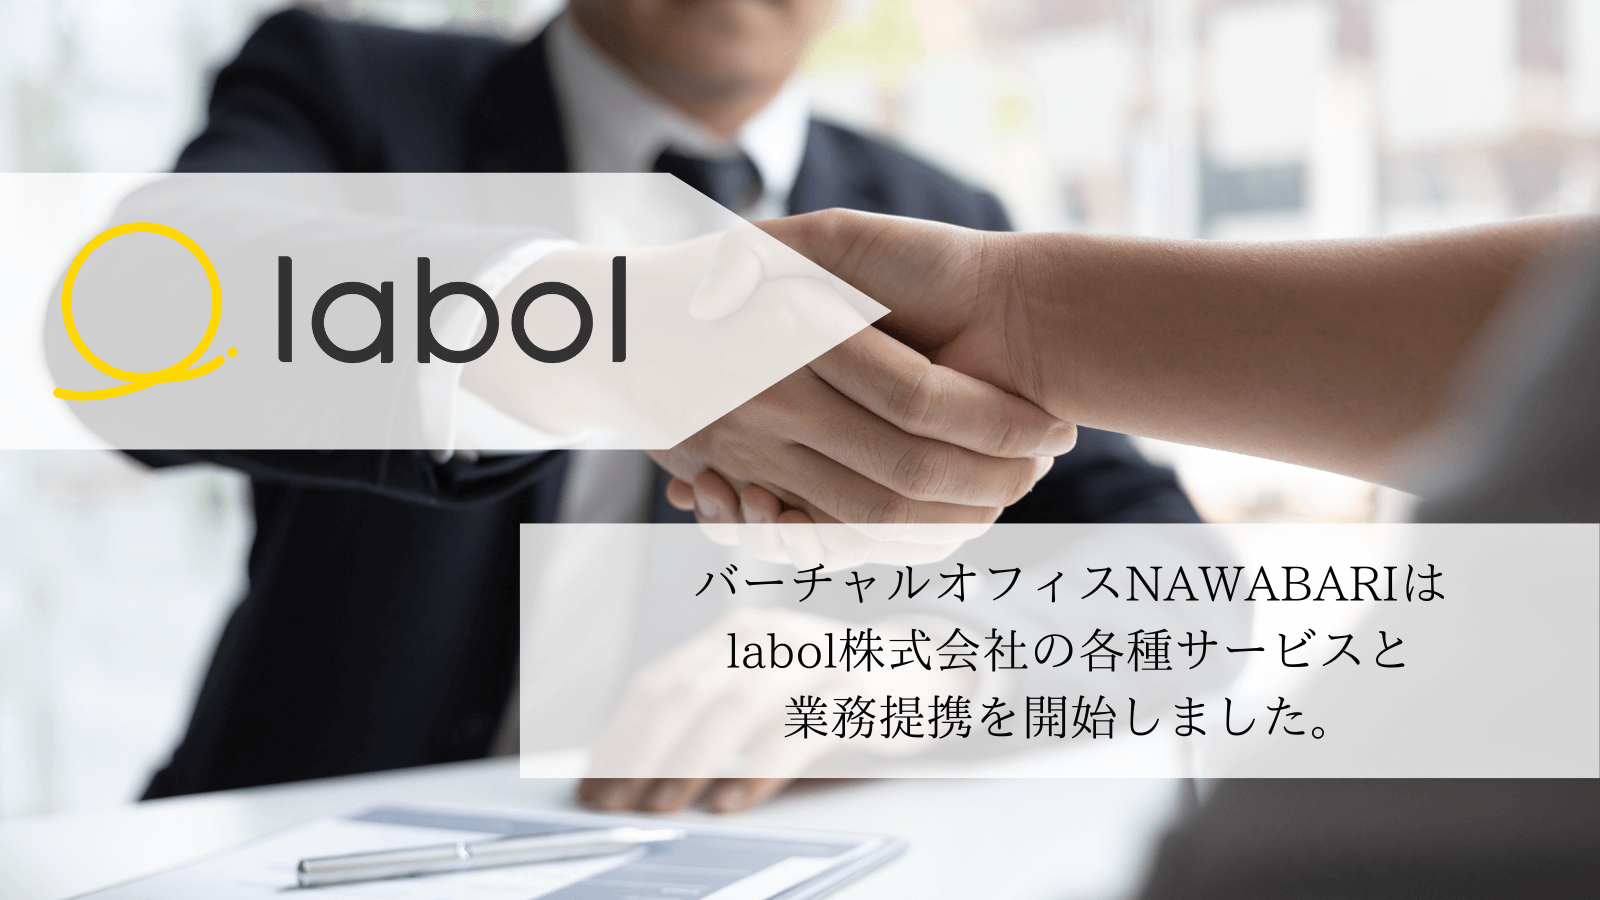 株式会社labolの運営するサービスと業務提携を開始しました。